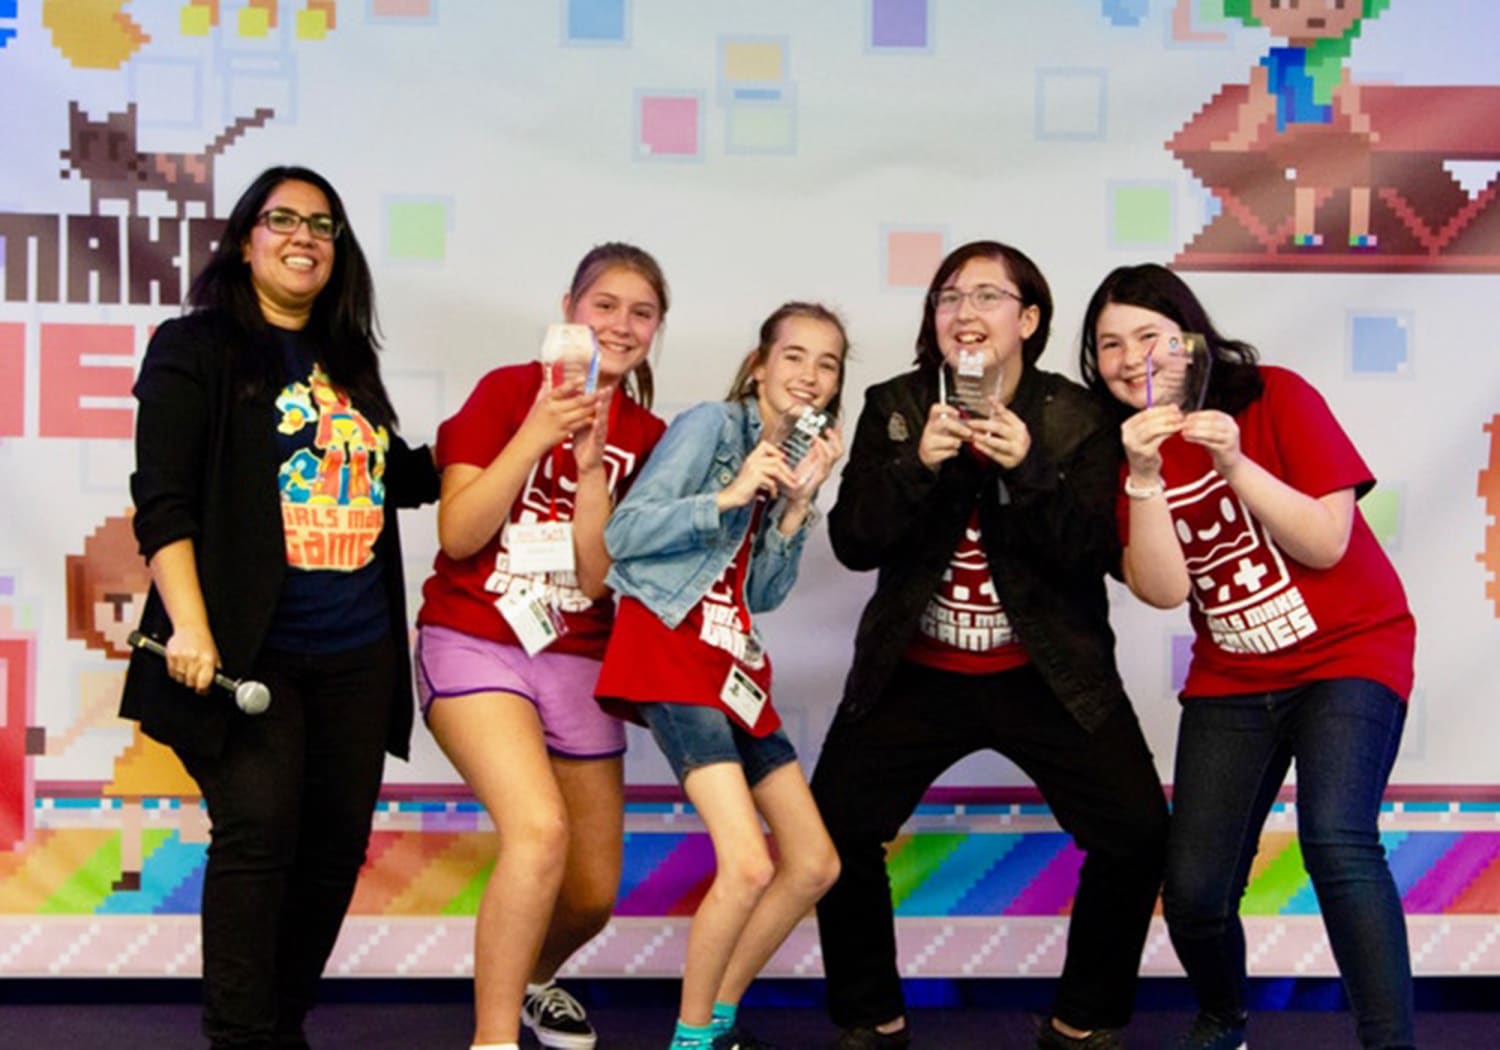 Girls Make Games Scholarship Fund